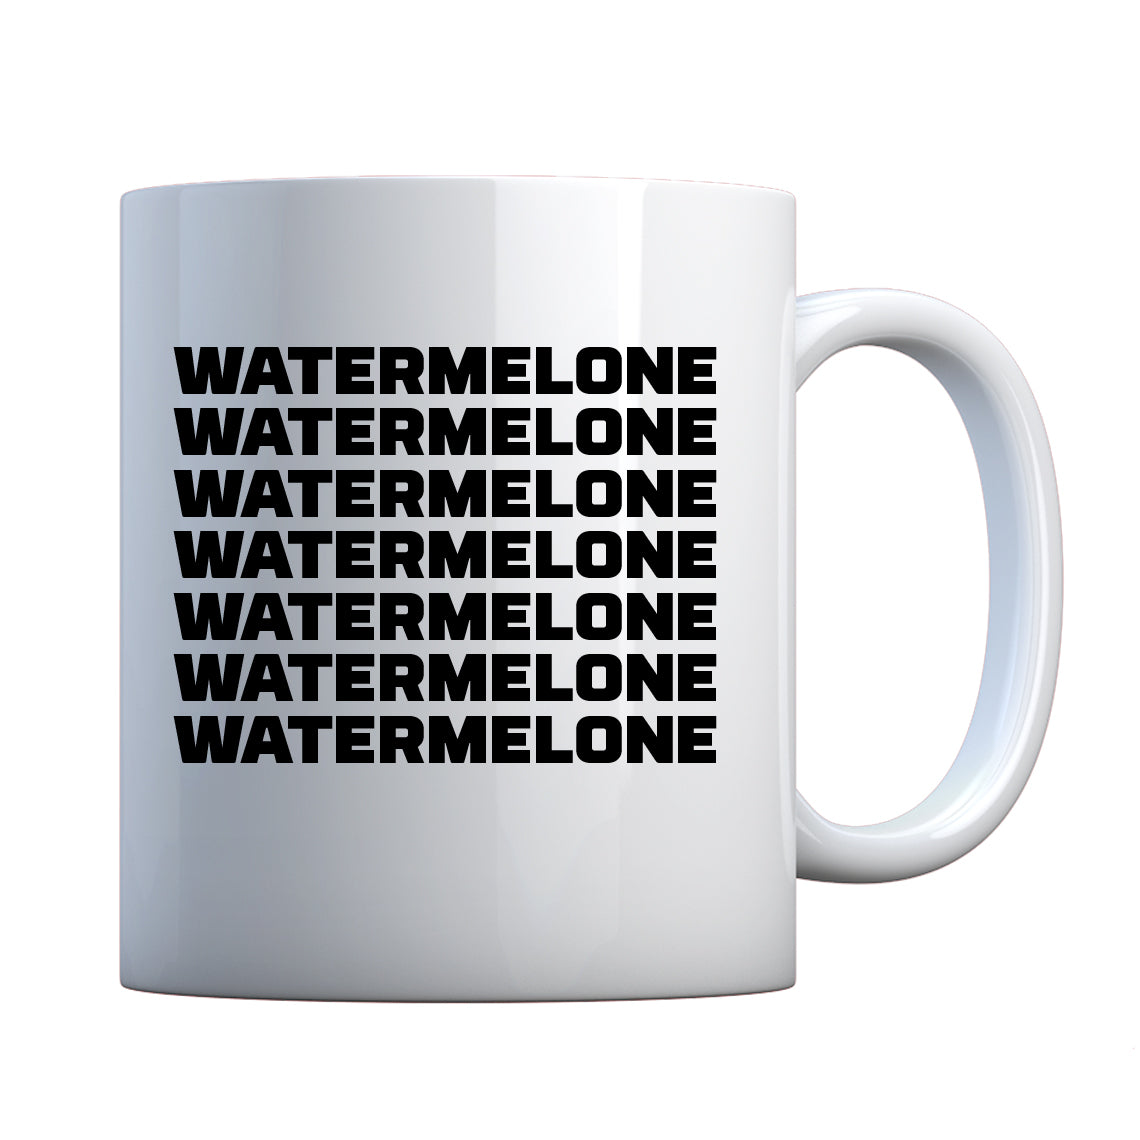 Mug Watermelone Ceramic Gift Mug